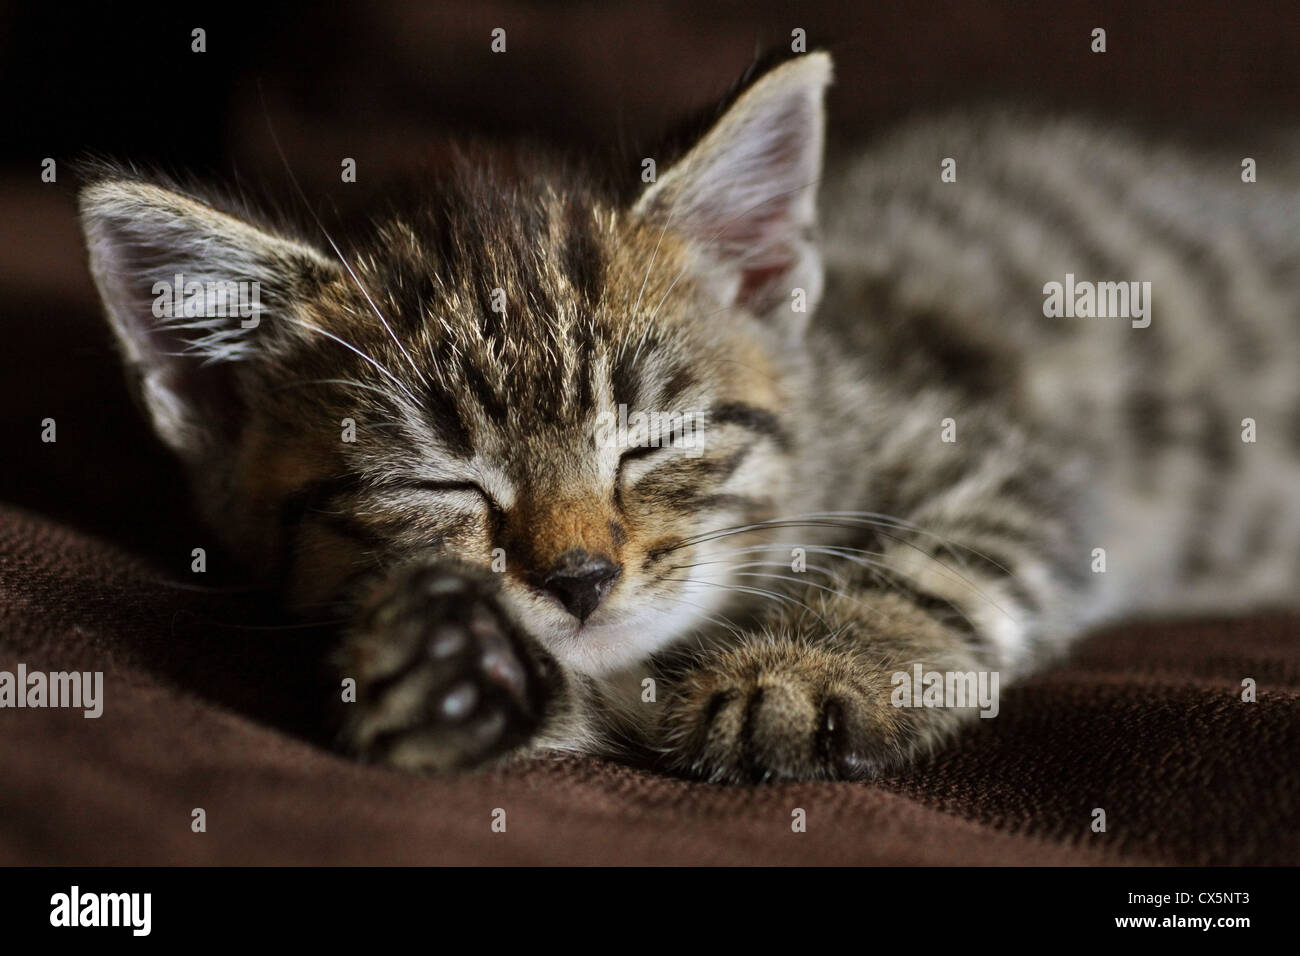 Tabby Kitten Katze Nickerchen... Bild körnig durch Iso 800. Stockfoto